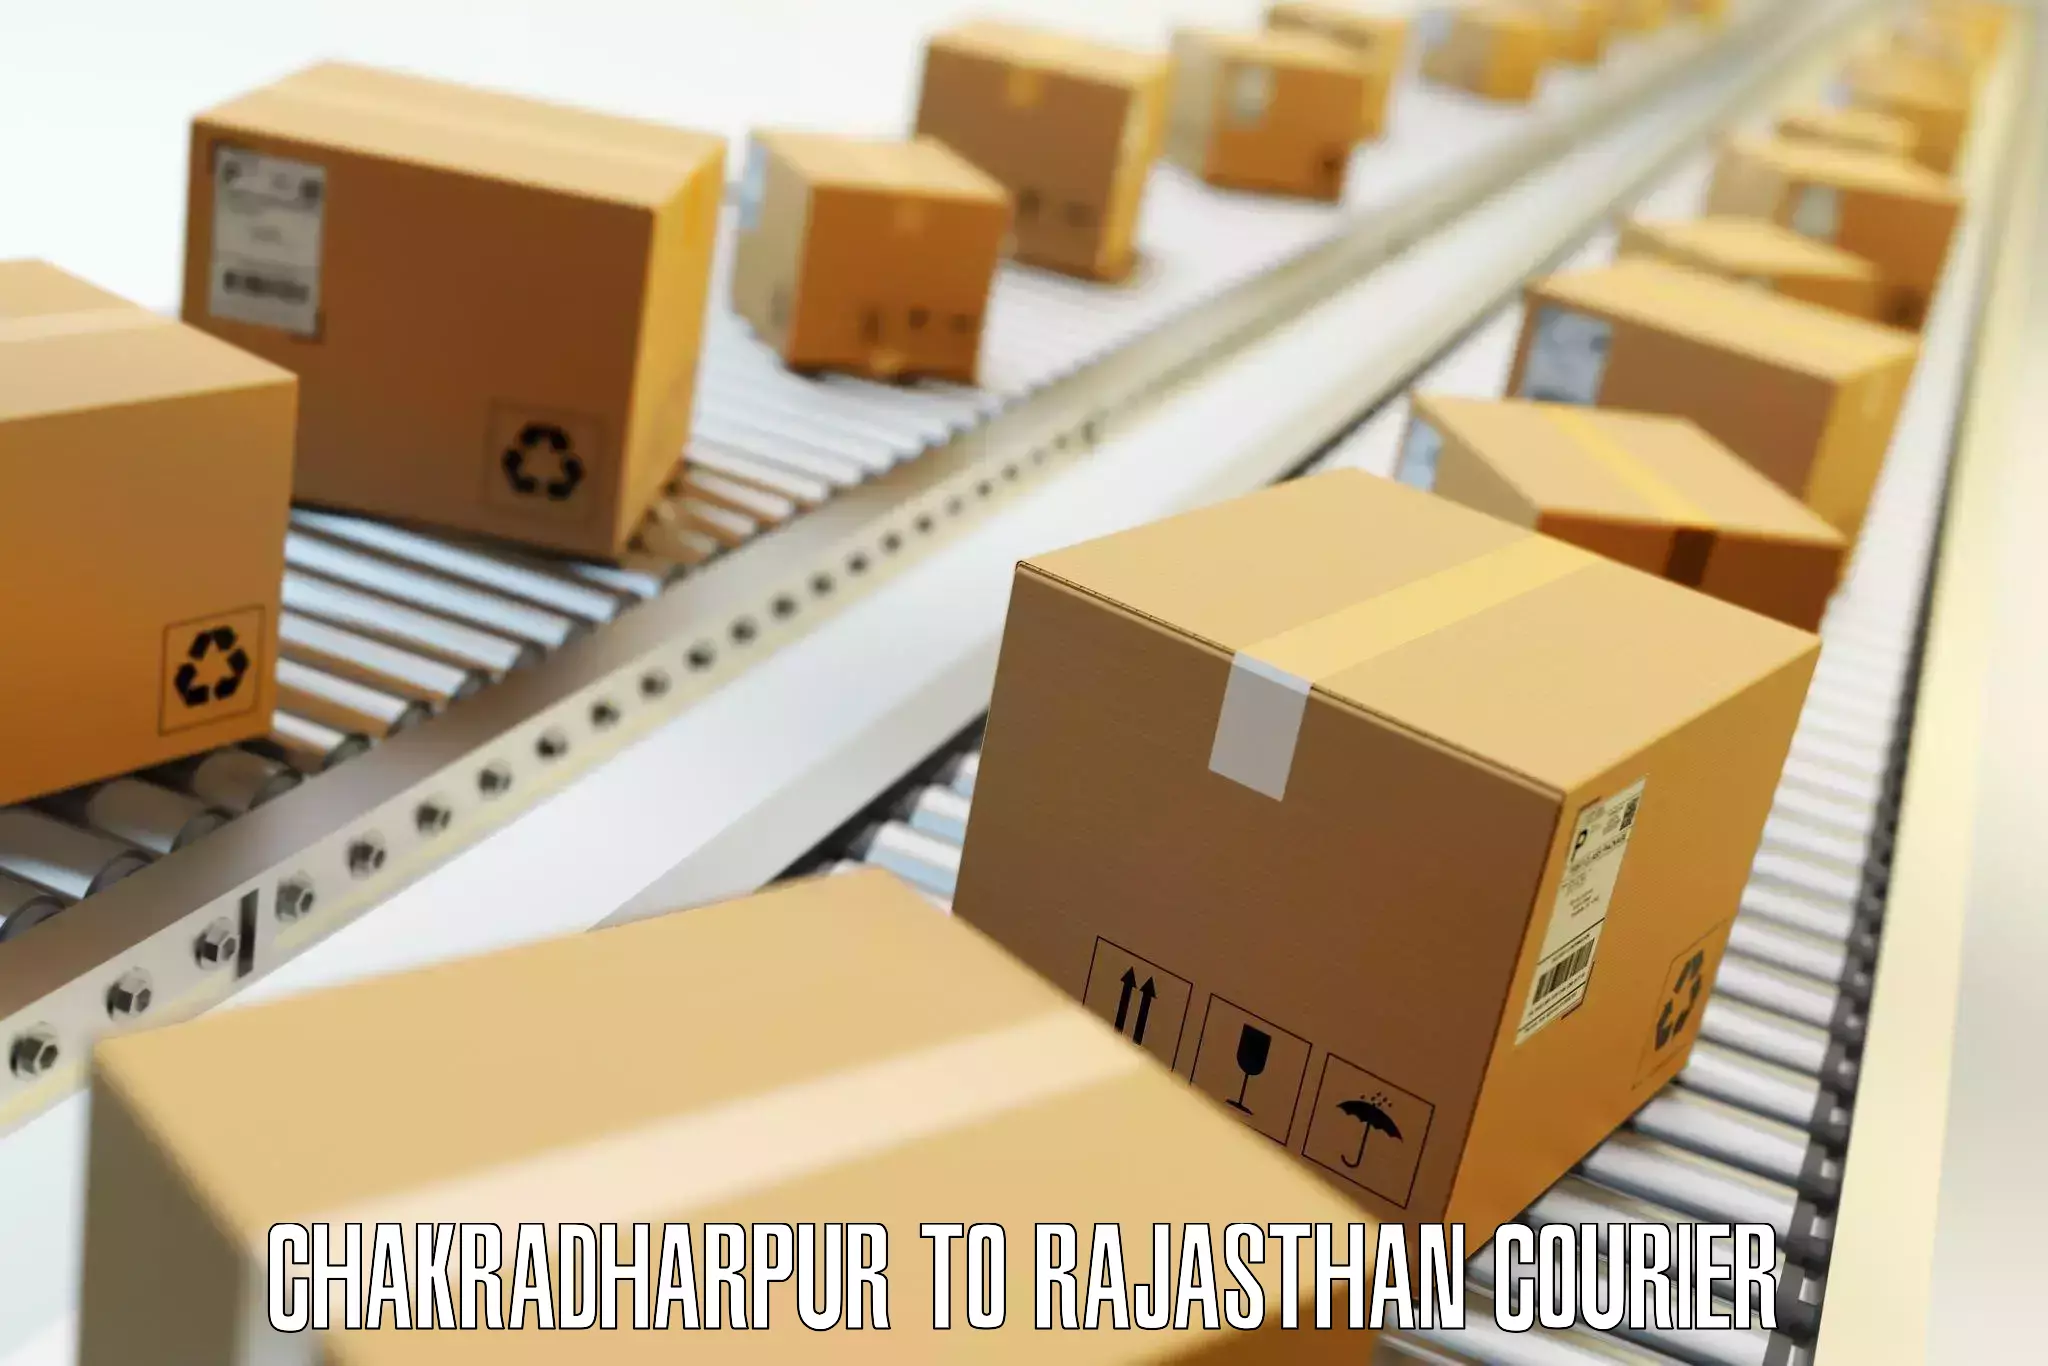 Timely baggage transport Chakradharpur to Rajasthan